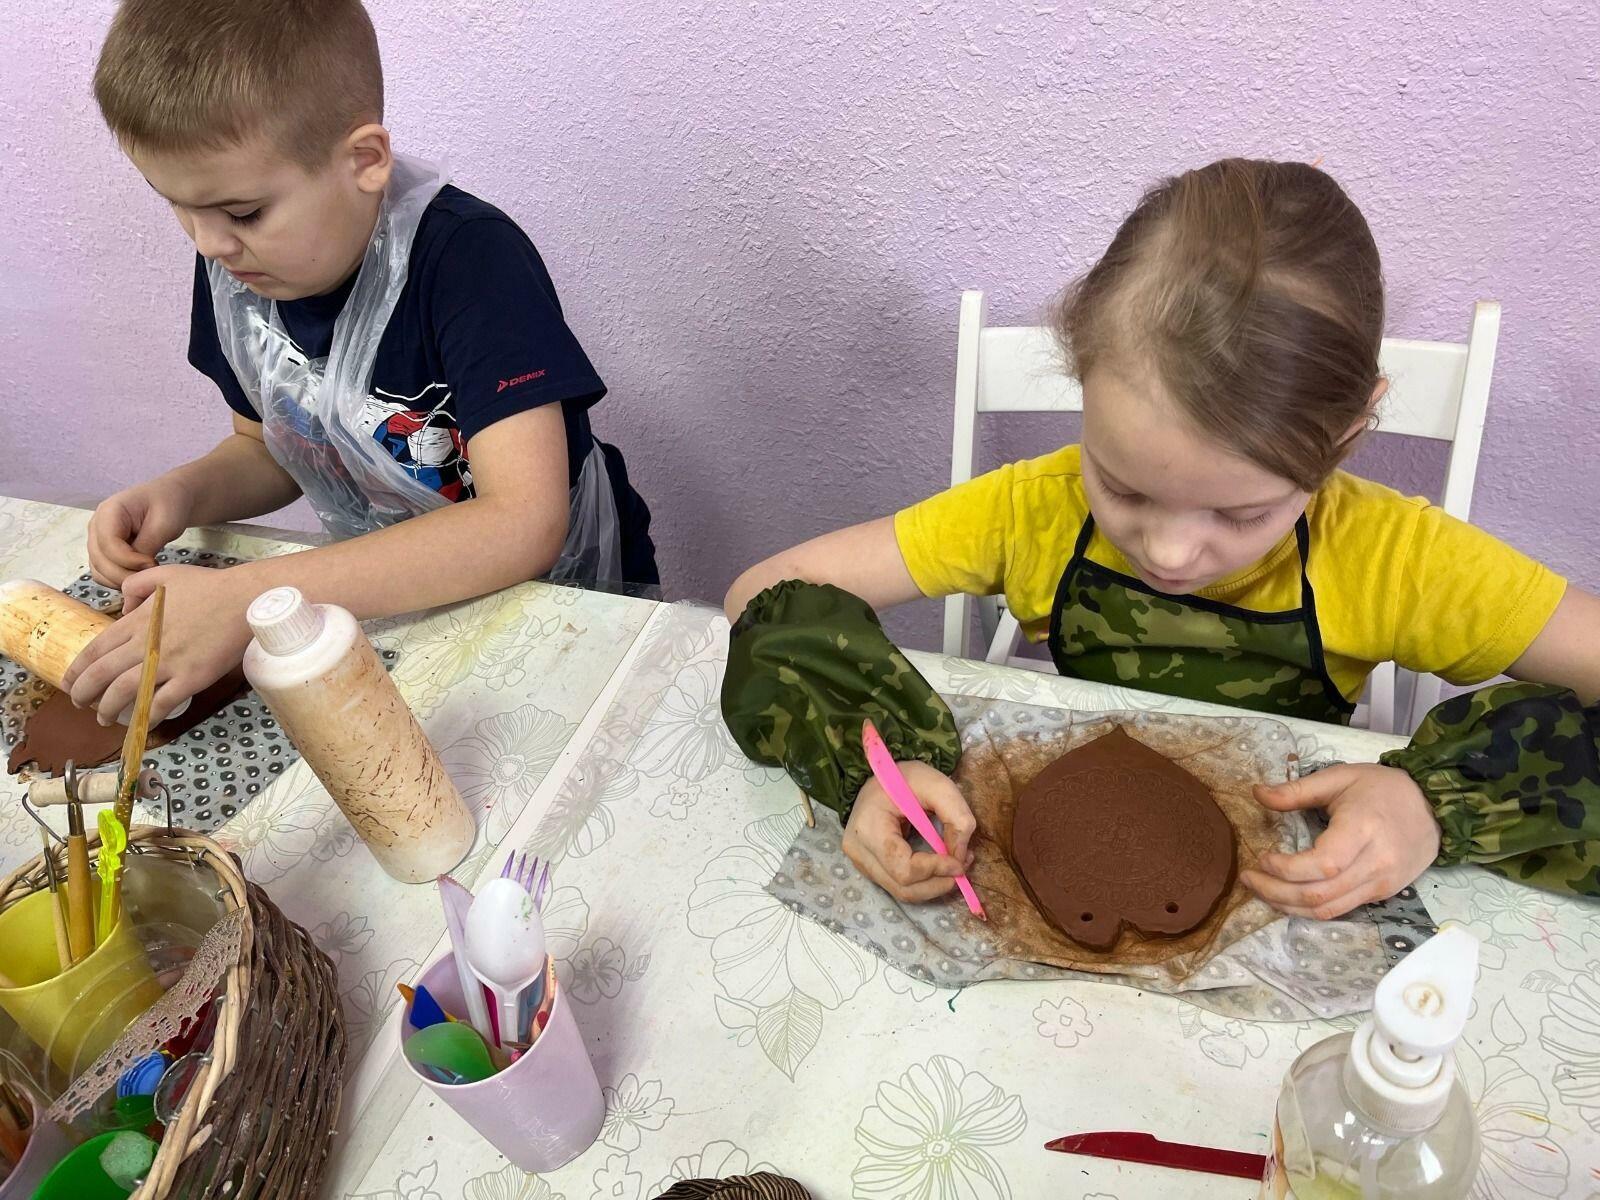 Радий Хабиров в социальных сетях рассказал о работе центра для детей с аутизмом